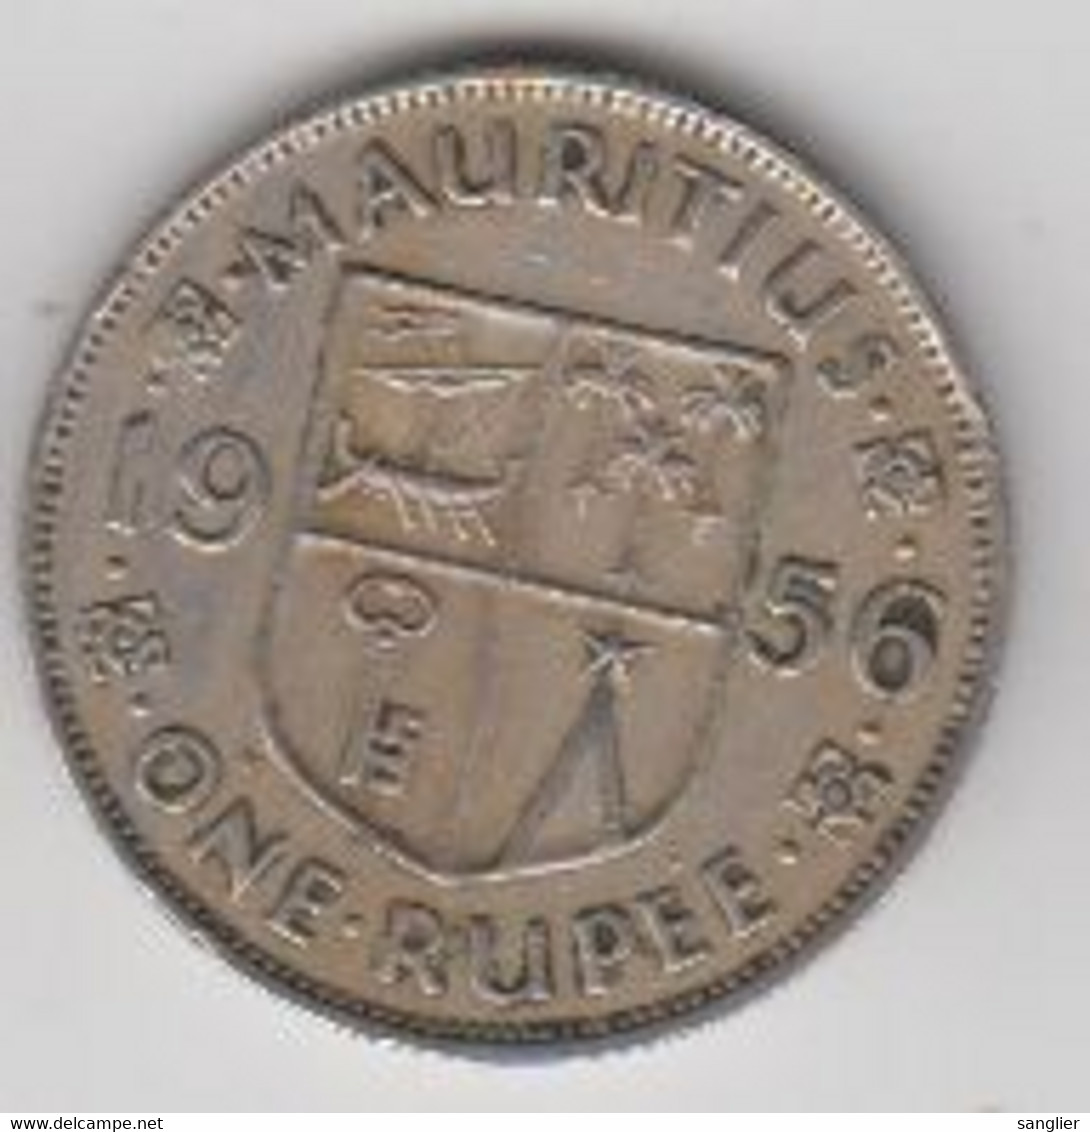 MAURITIUS - ONE RUPEE 1956 - Mauritanie